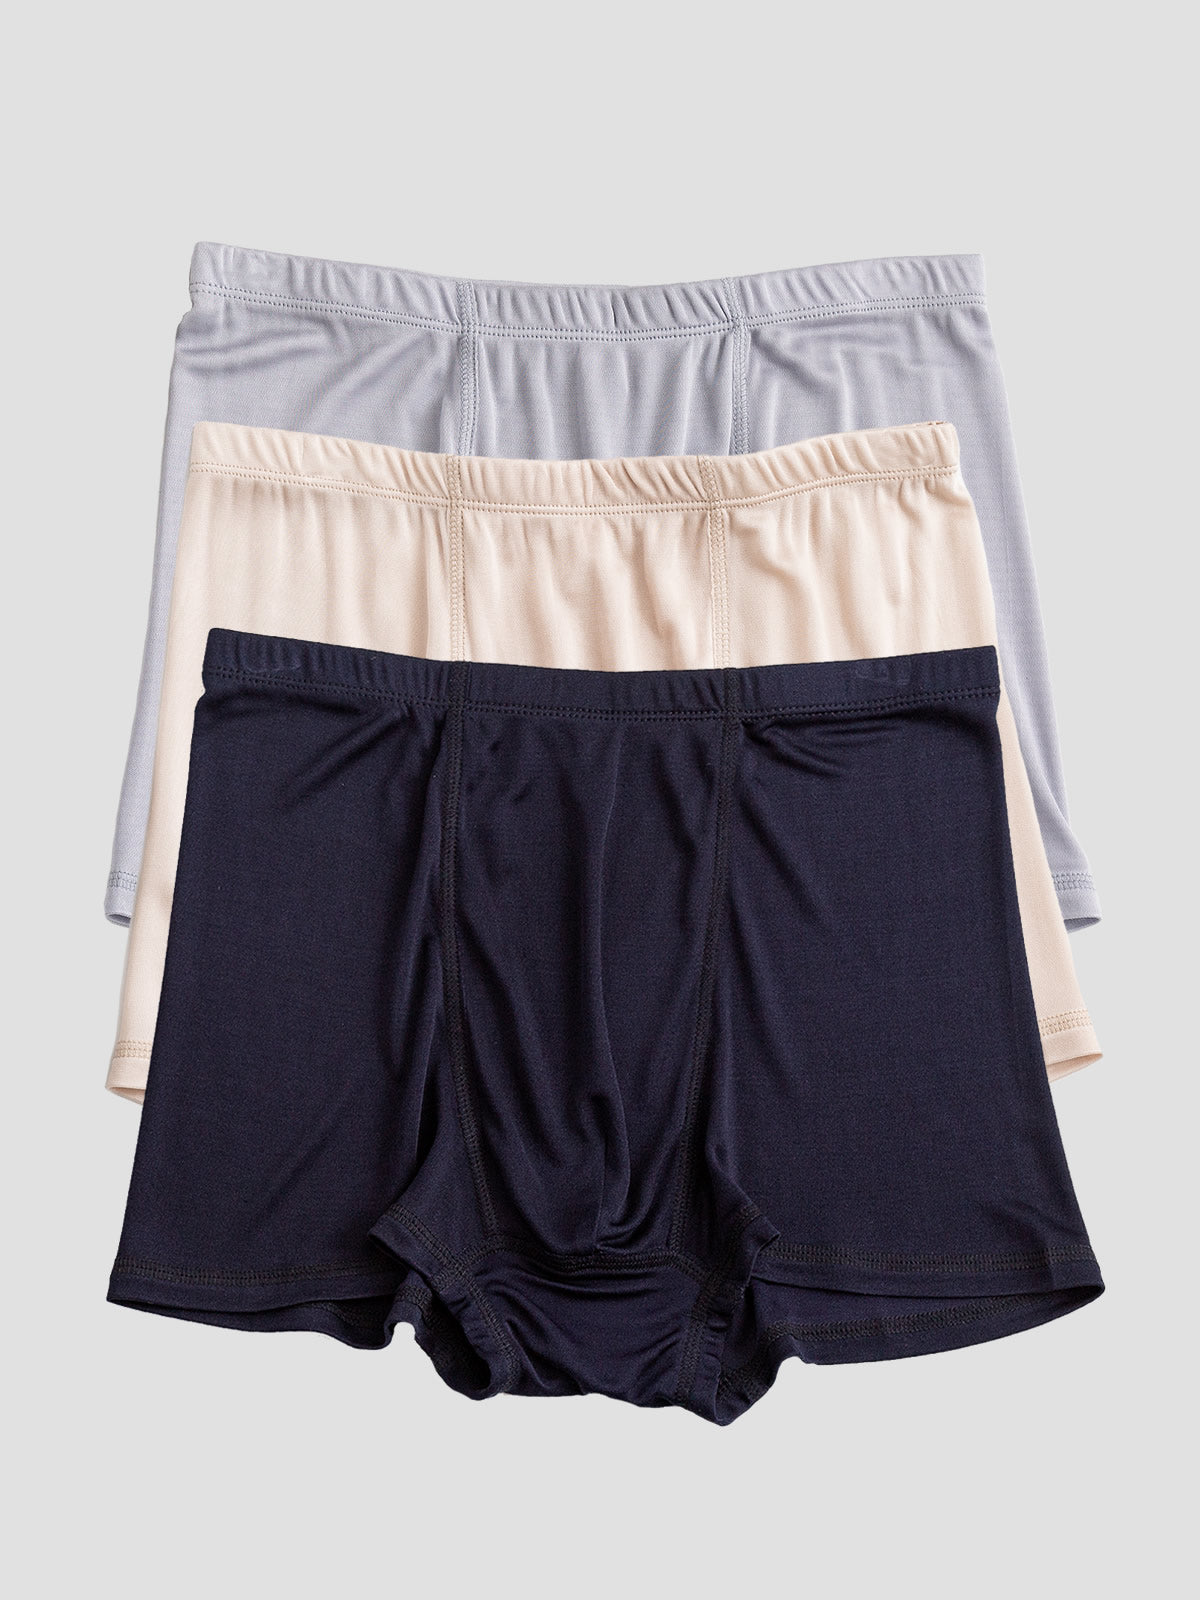 Silksilky Soft Silk Boxer Briefs for Men Best Boxer Shorts for Men –  SILKSILKY